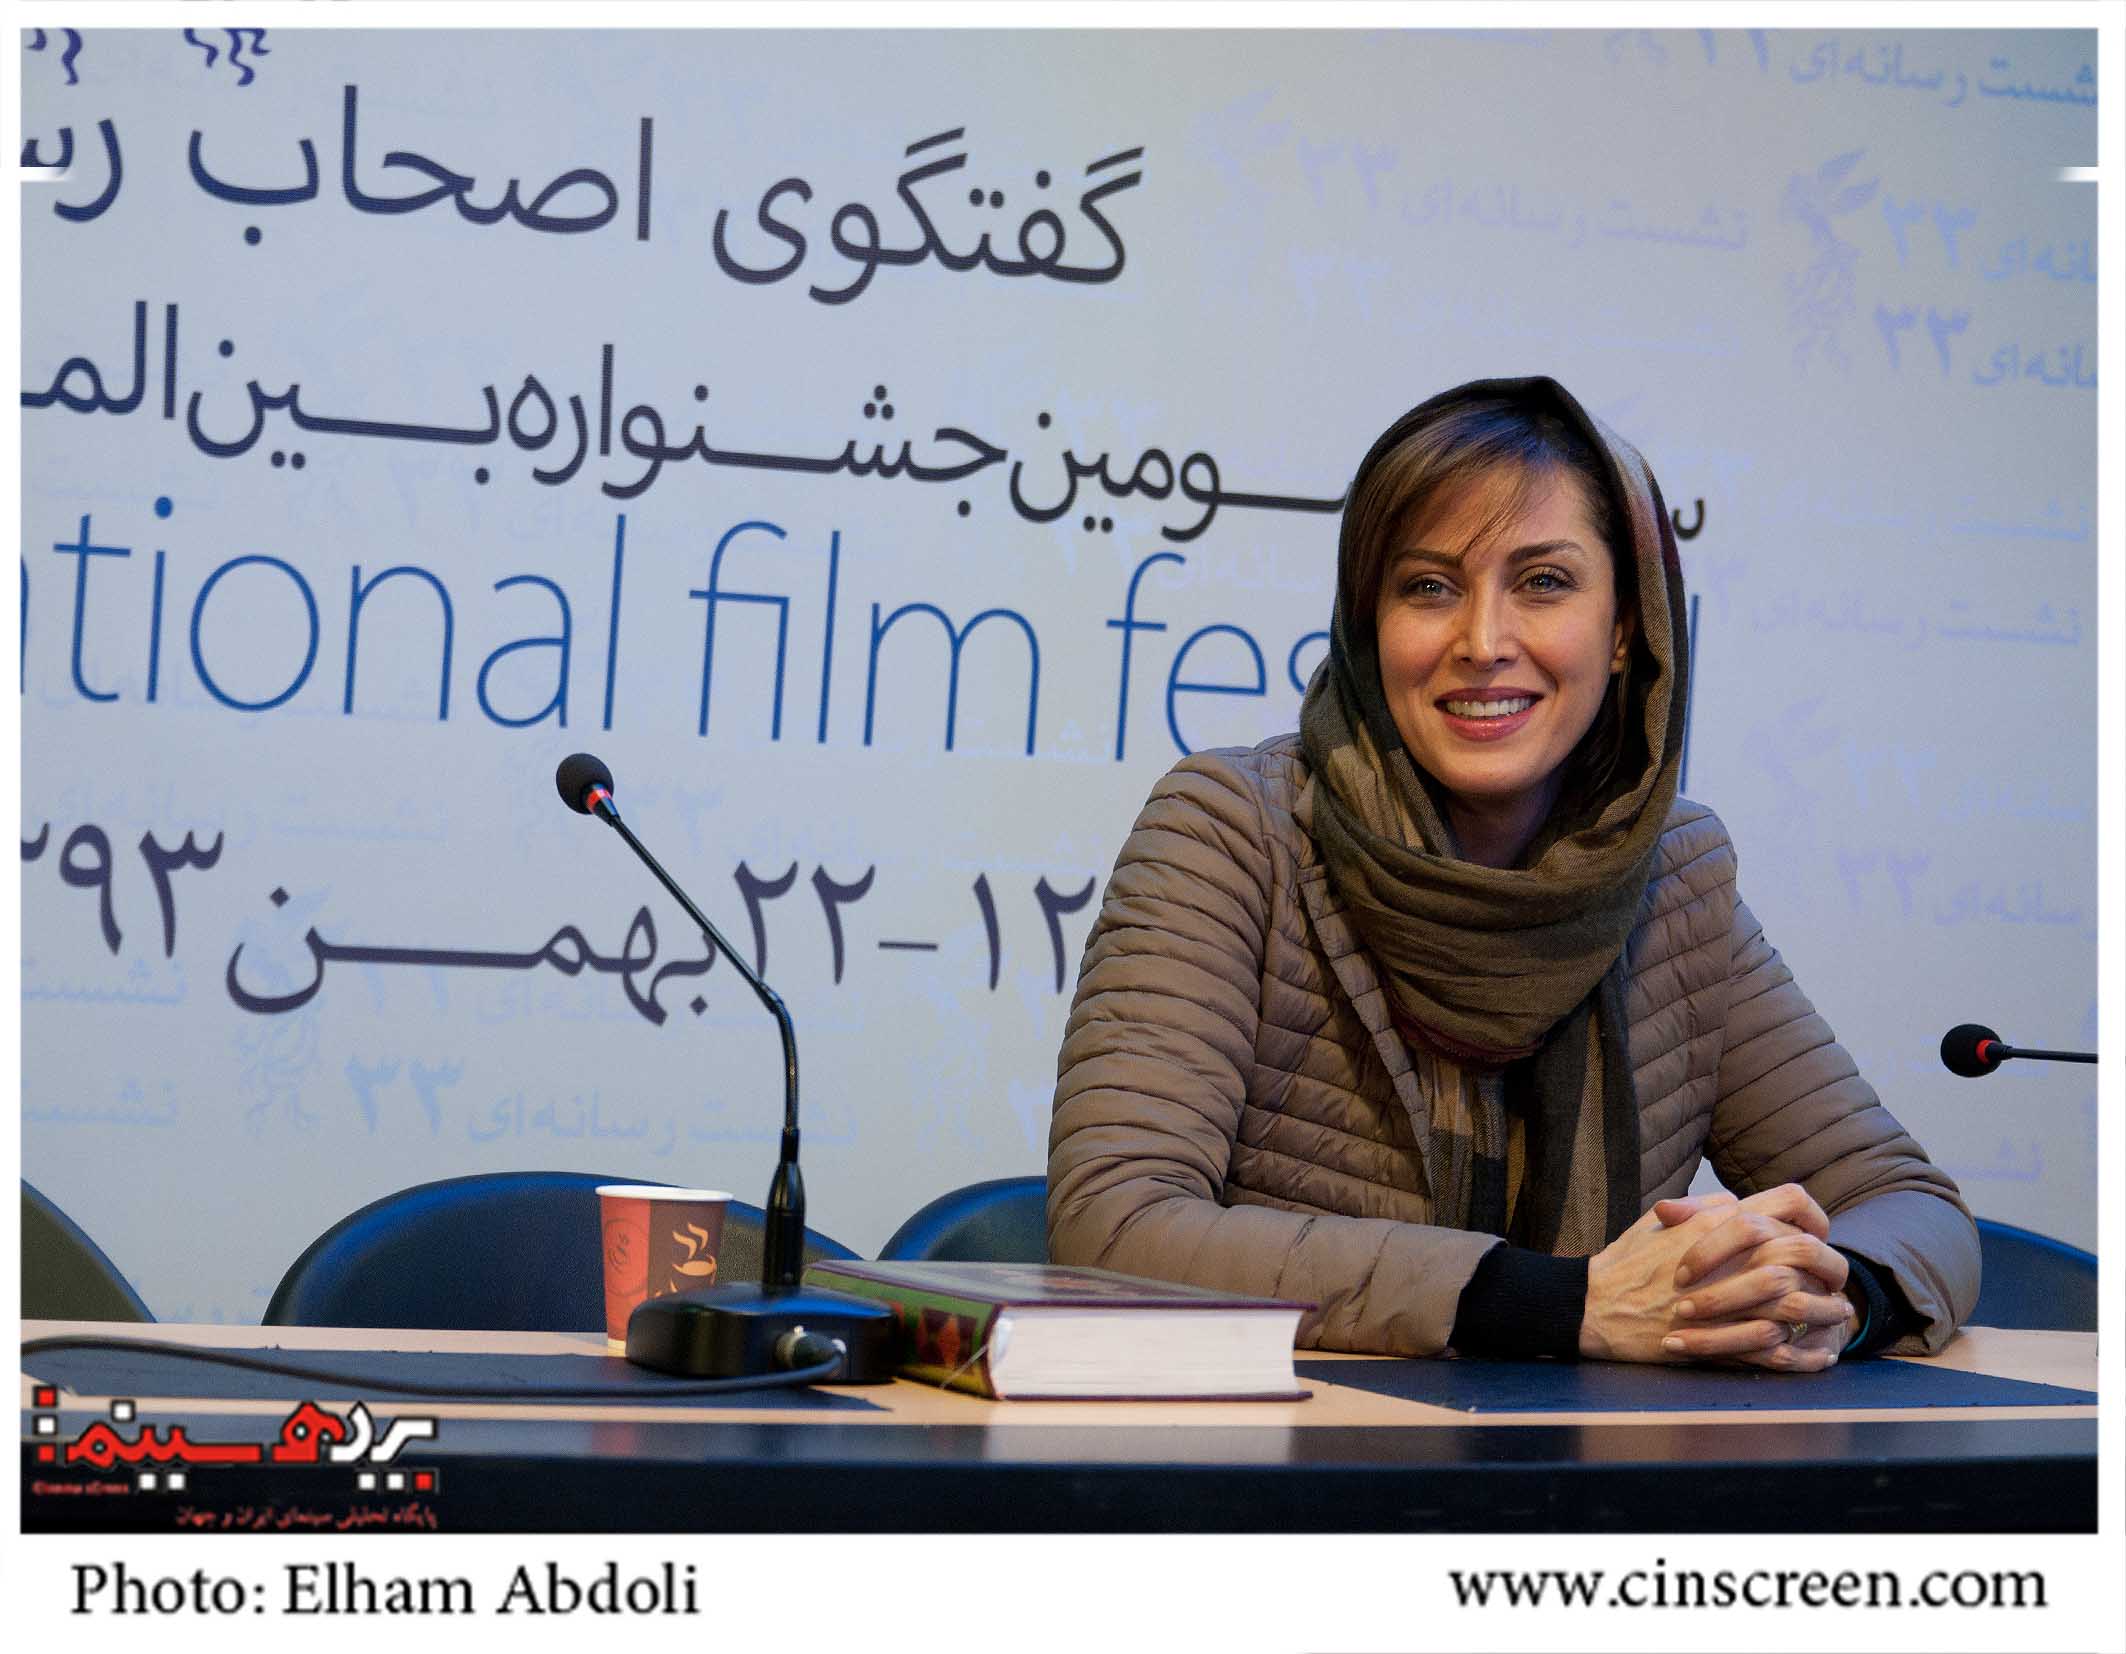 مهتاب کرامتی در نشست رسانه ای فیلم ارغوان. عکس از الهام عبدلی